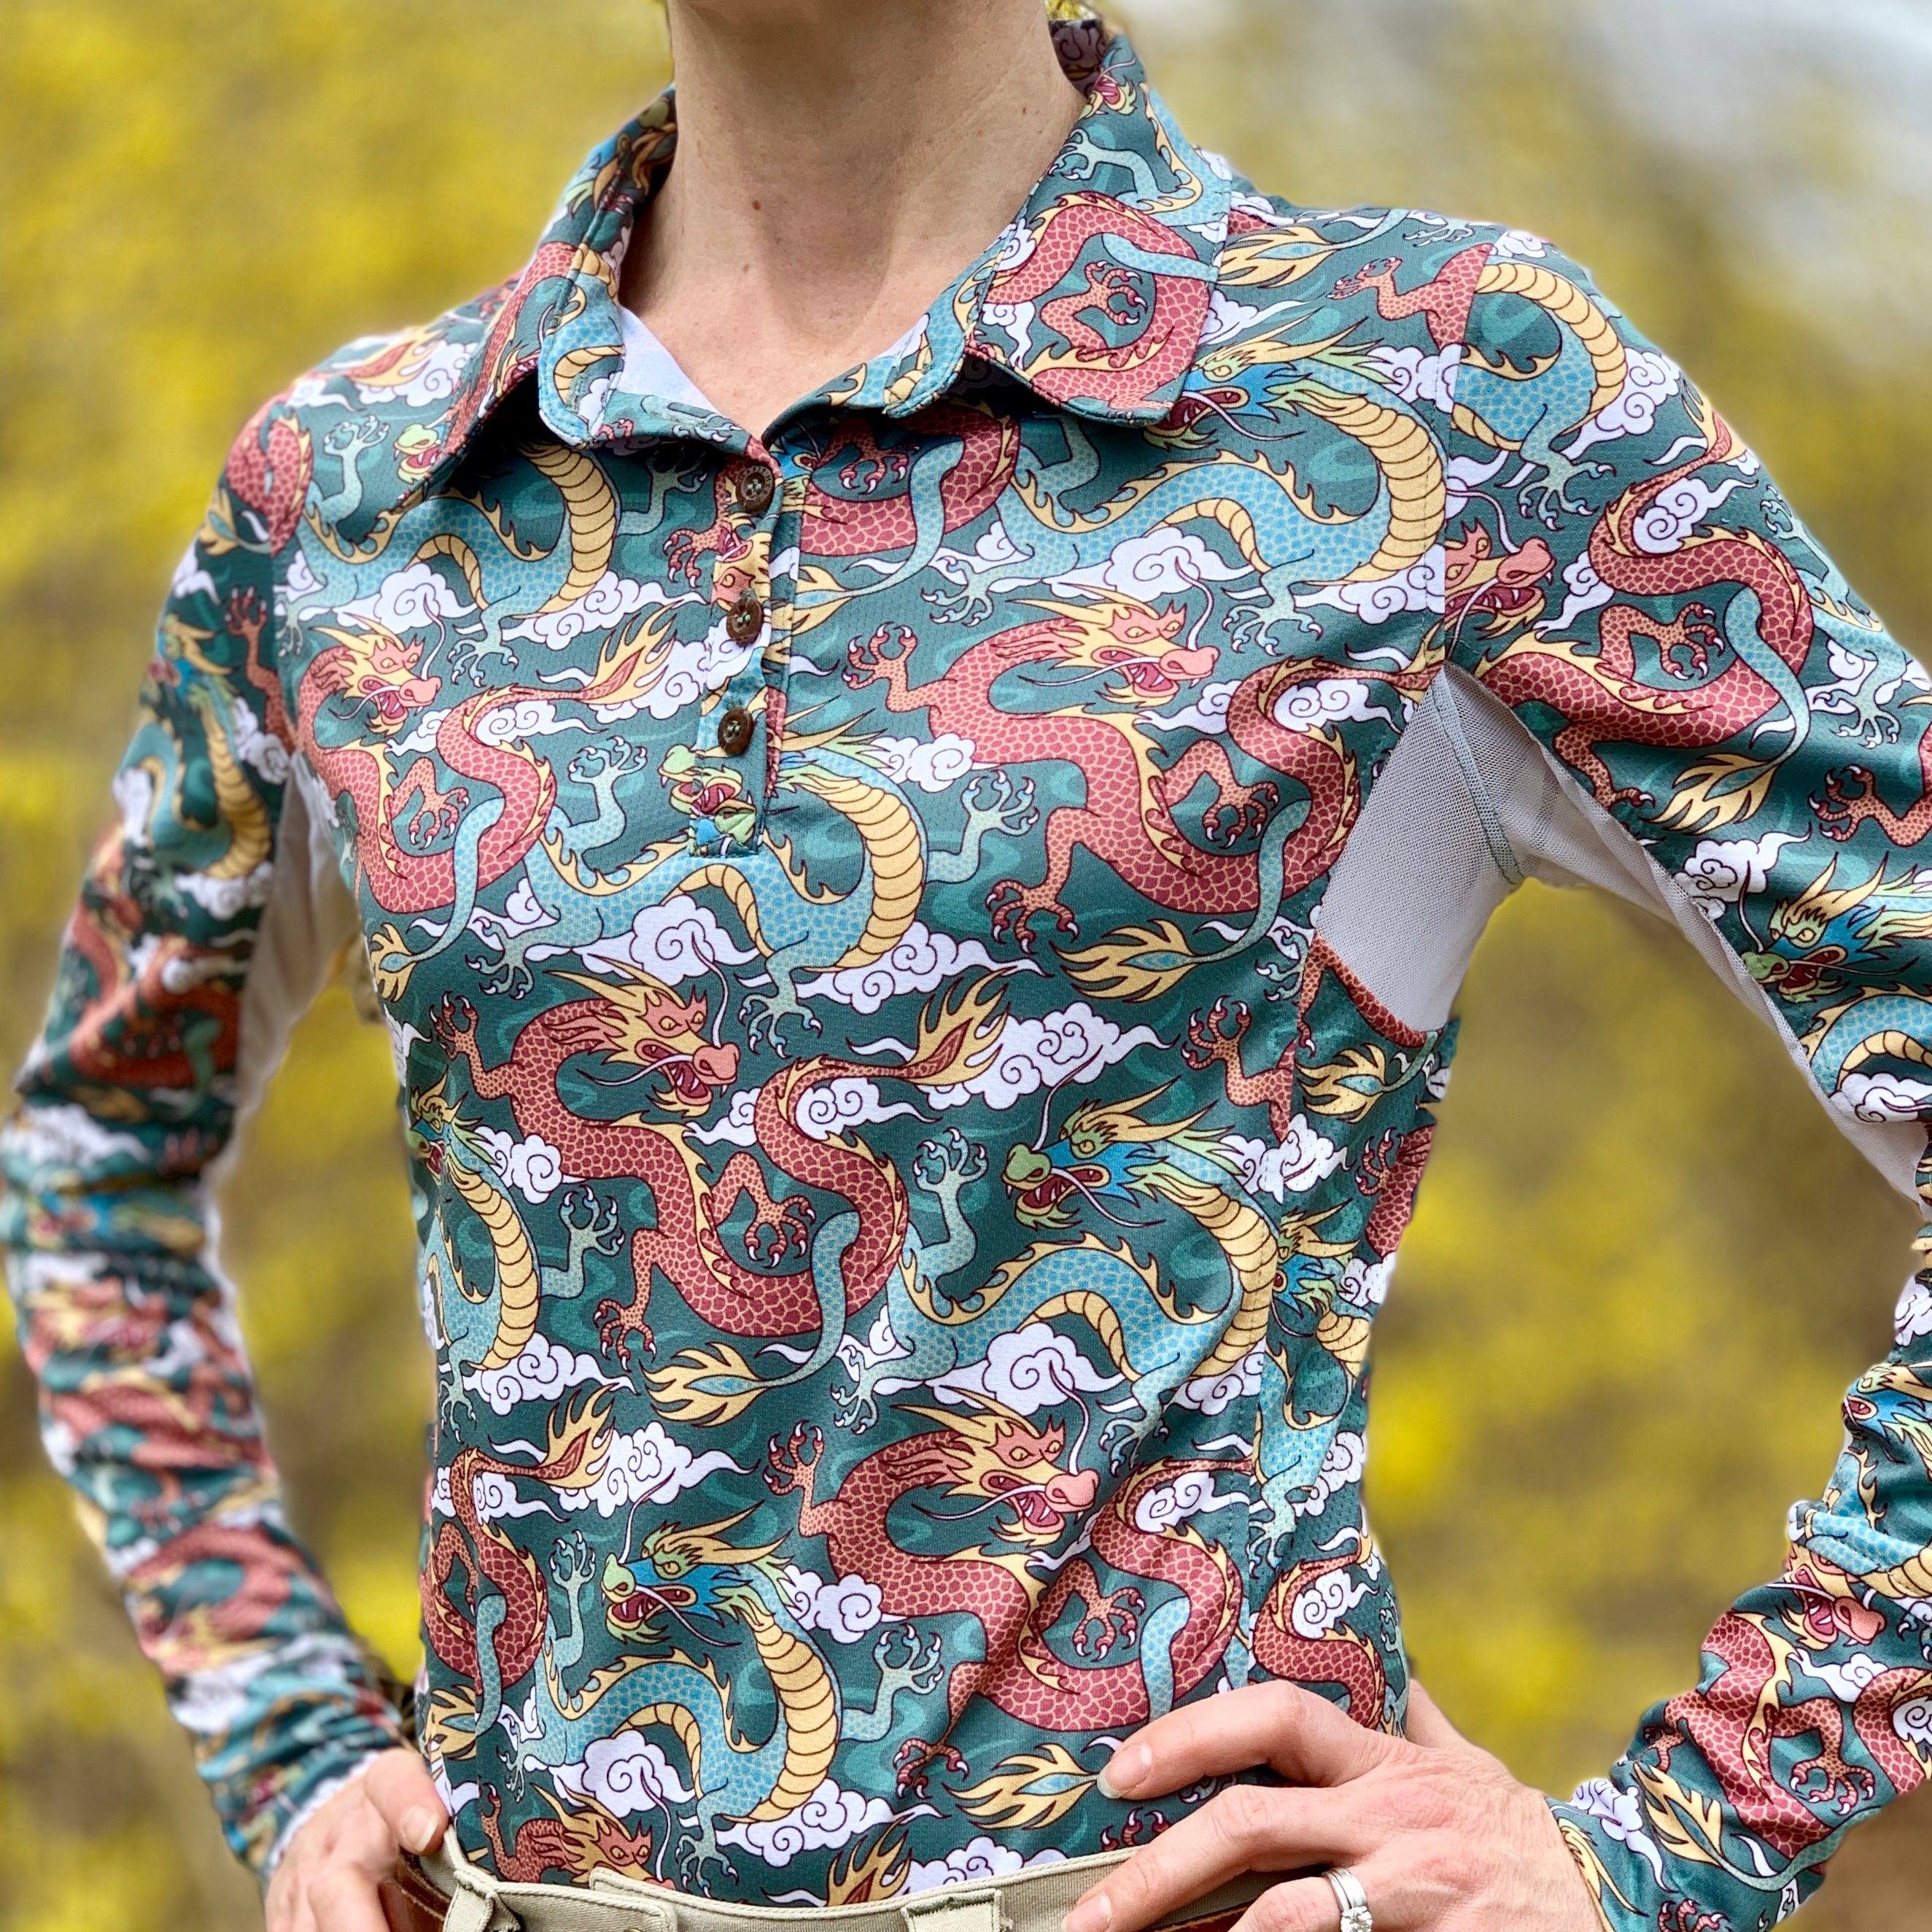 Equestrian Clothing - Sun Shirts for Women - Polo Shirts for Women – Her  Riding Habit